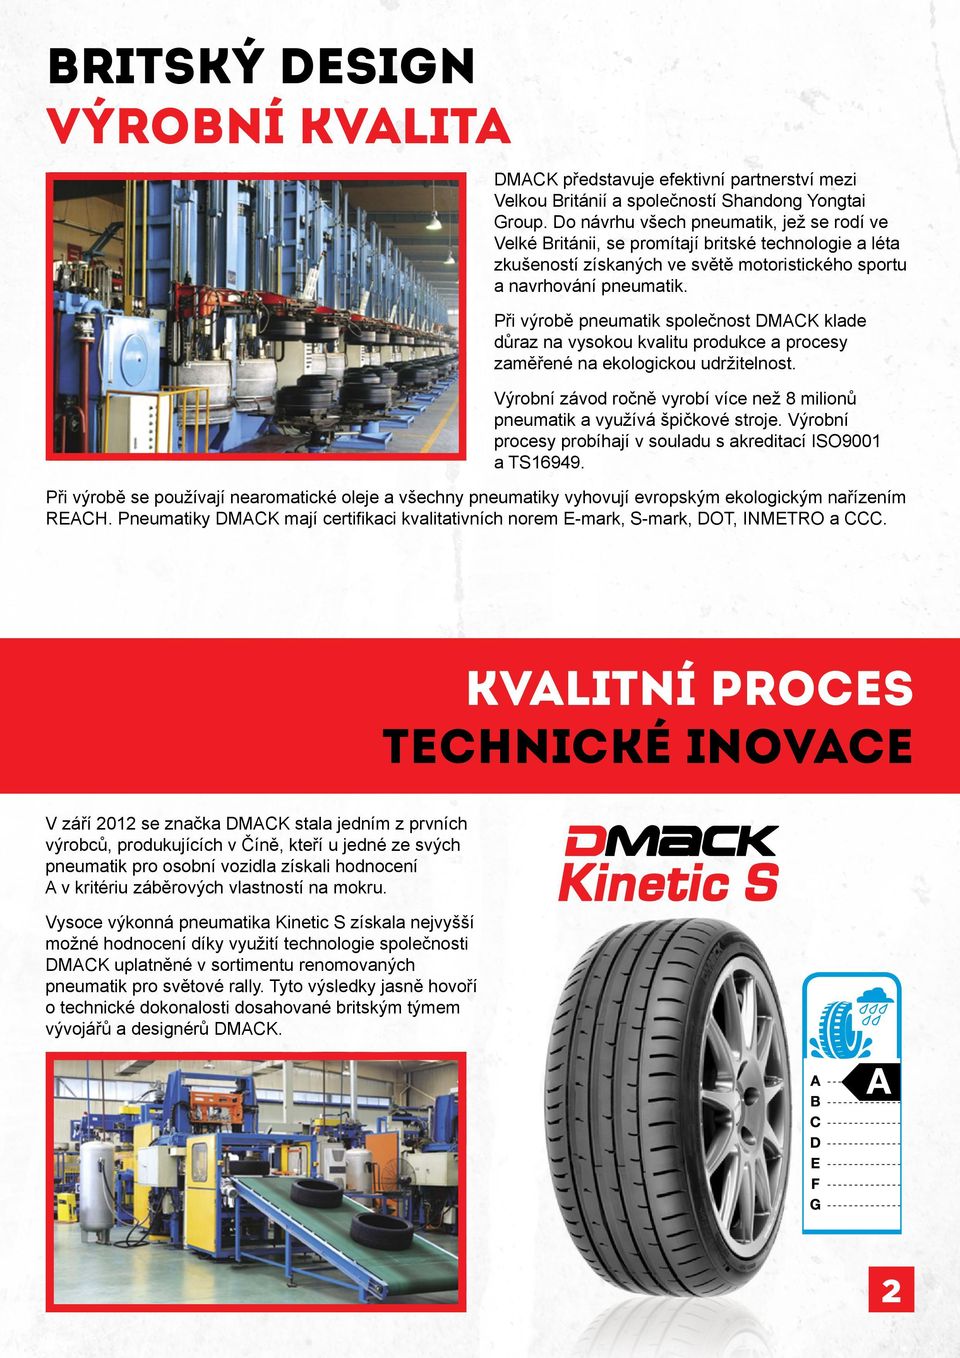 Při výrobě pneumatik společnost DMACK klade důraz na vysokou kvalitu produkce a procesy zaměřené na ekologickou udržitelnost.